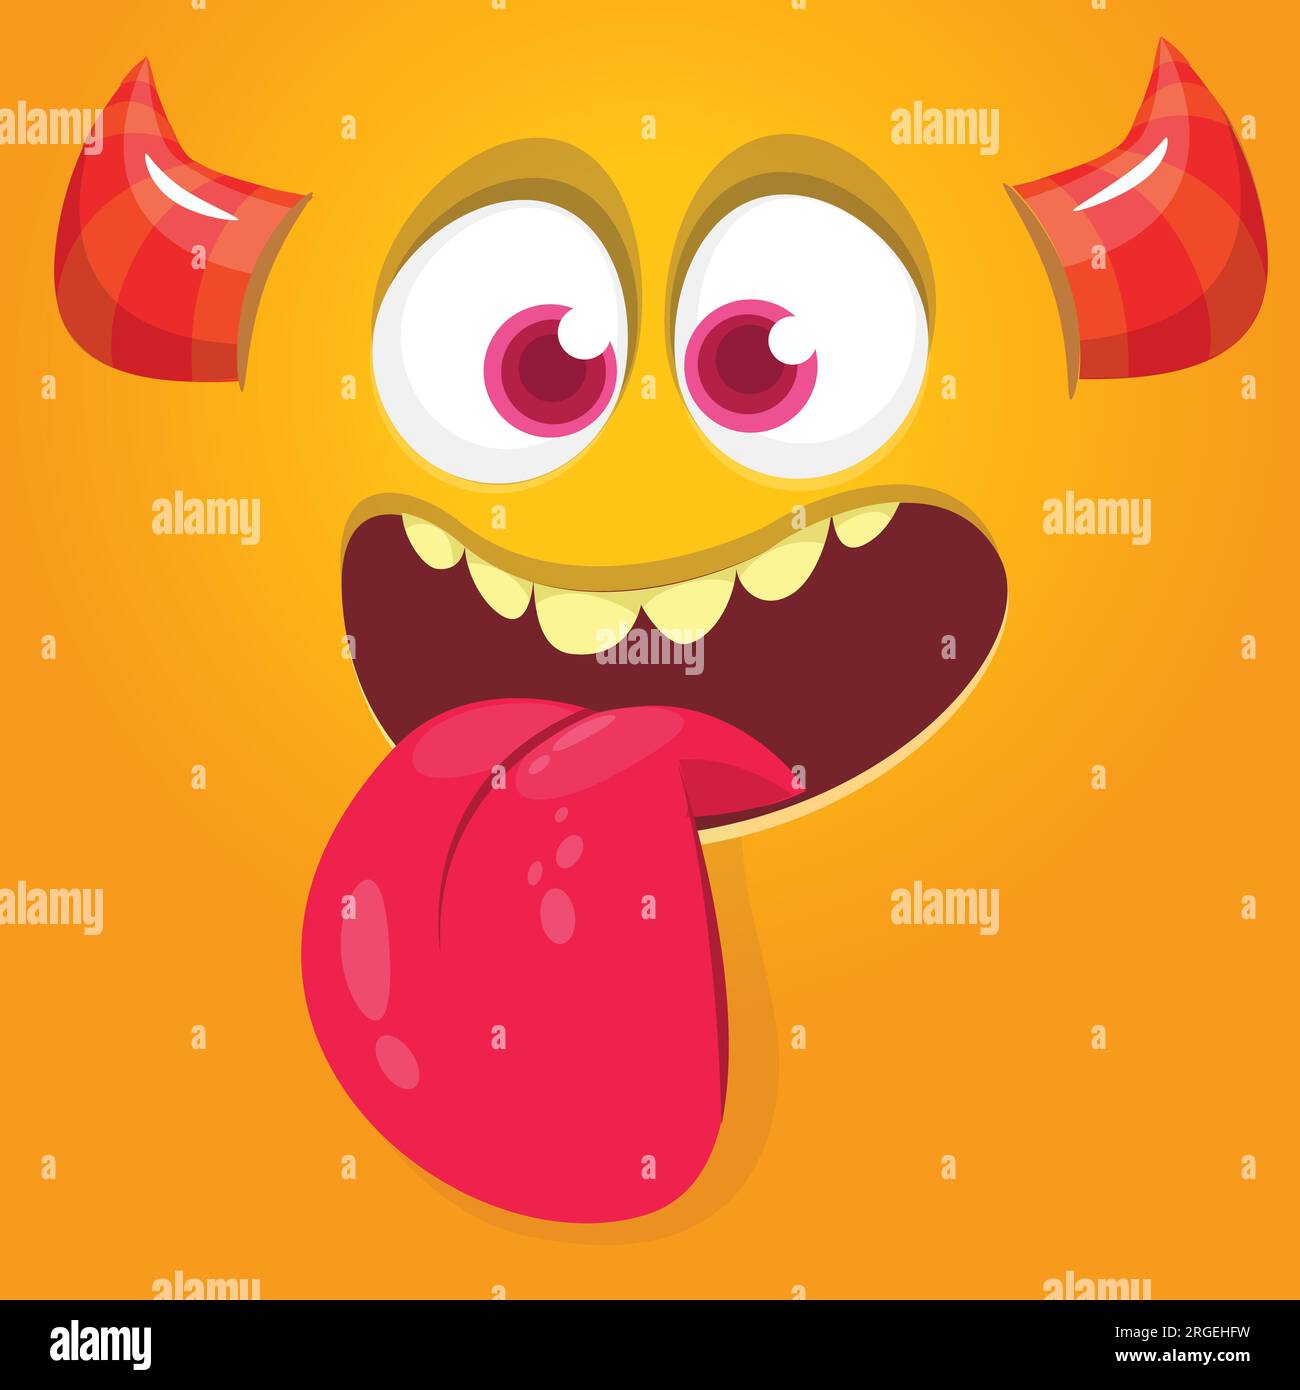 Komisches Monstergesicht, das Zunge zeigt. Illustration eines süßen und glücklichen mythischen Alien-Ausdrucks. Halloween- oder Verpackungsdesign Stock Vektor